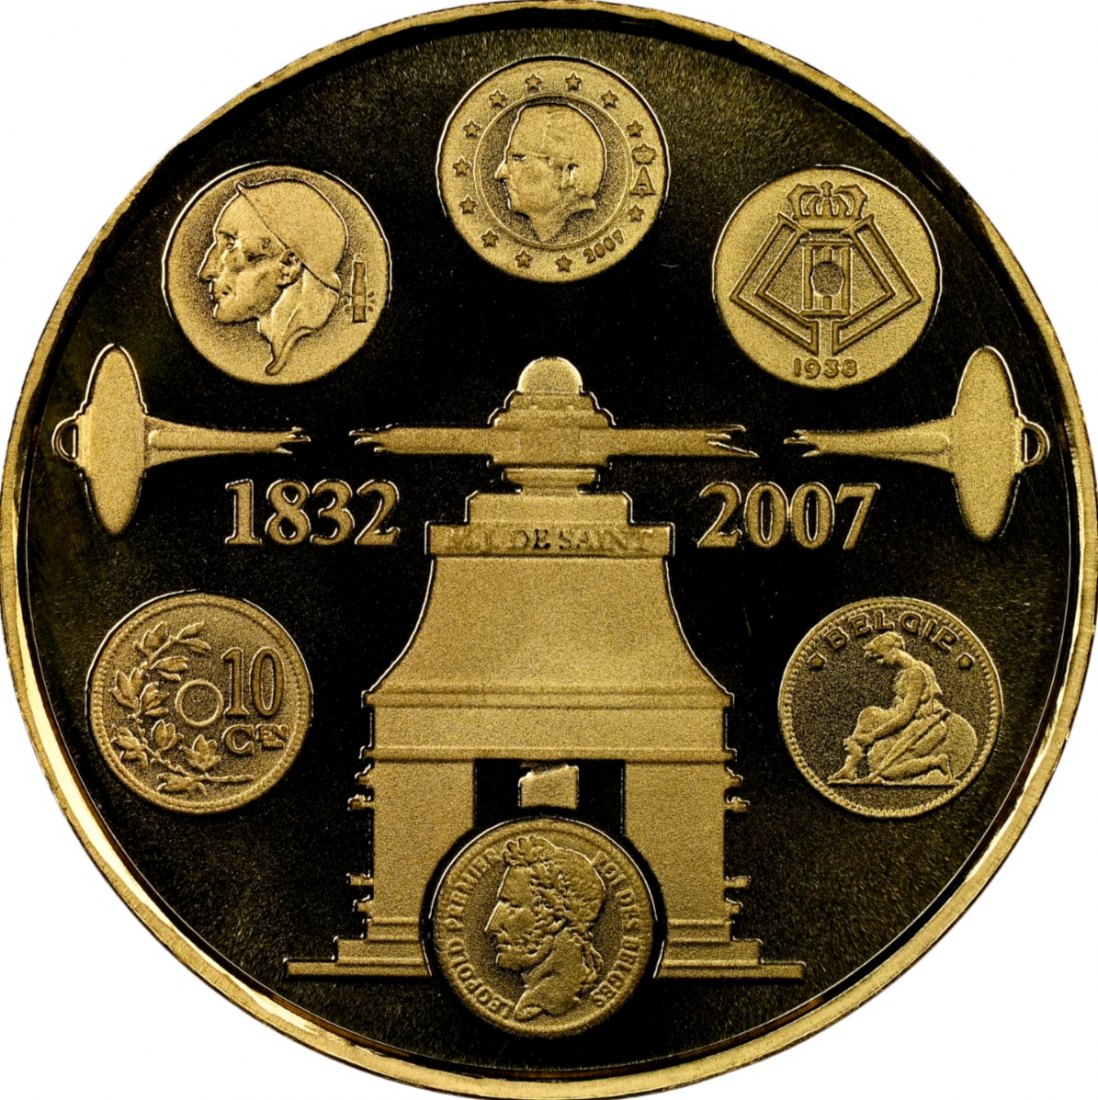  Belgien 100 Euro 2007 | NGC PF69 ULTRA CAMEO TOP POP | 175. Jahrestag der belgischen Münzen   